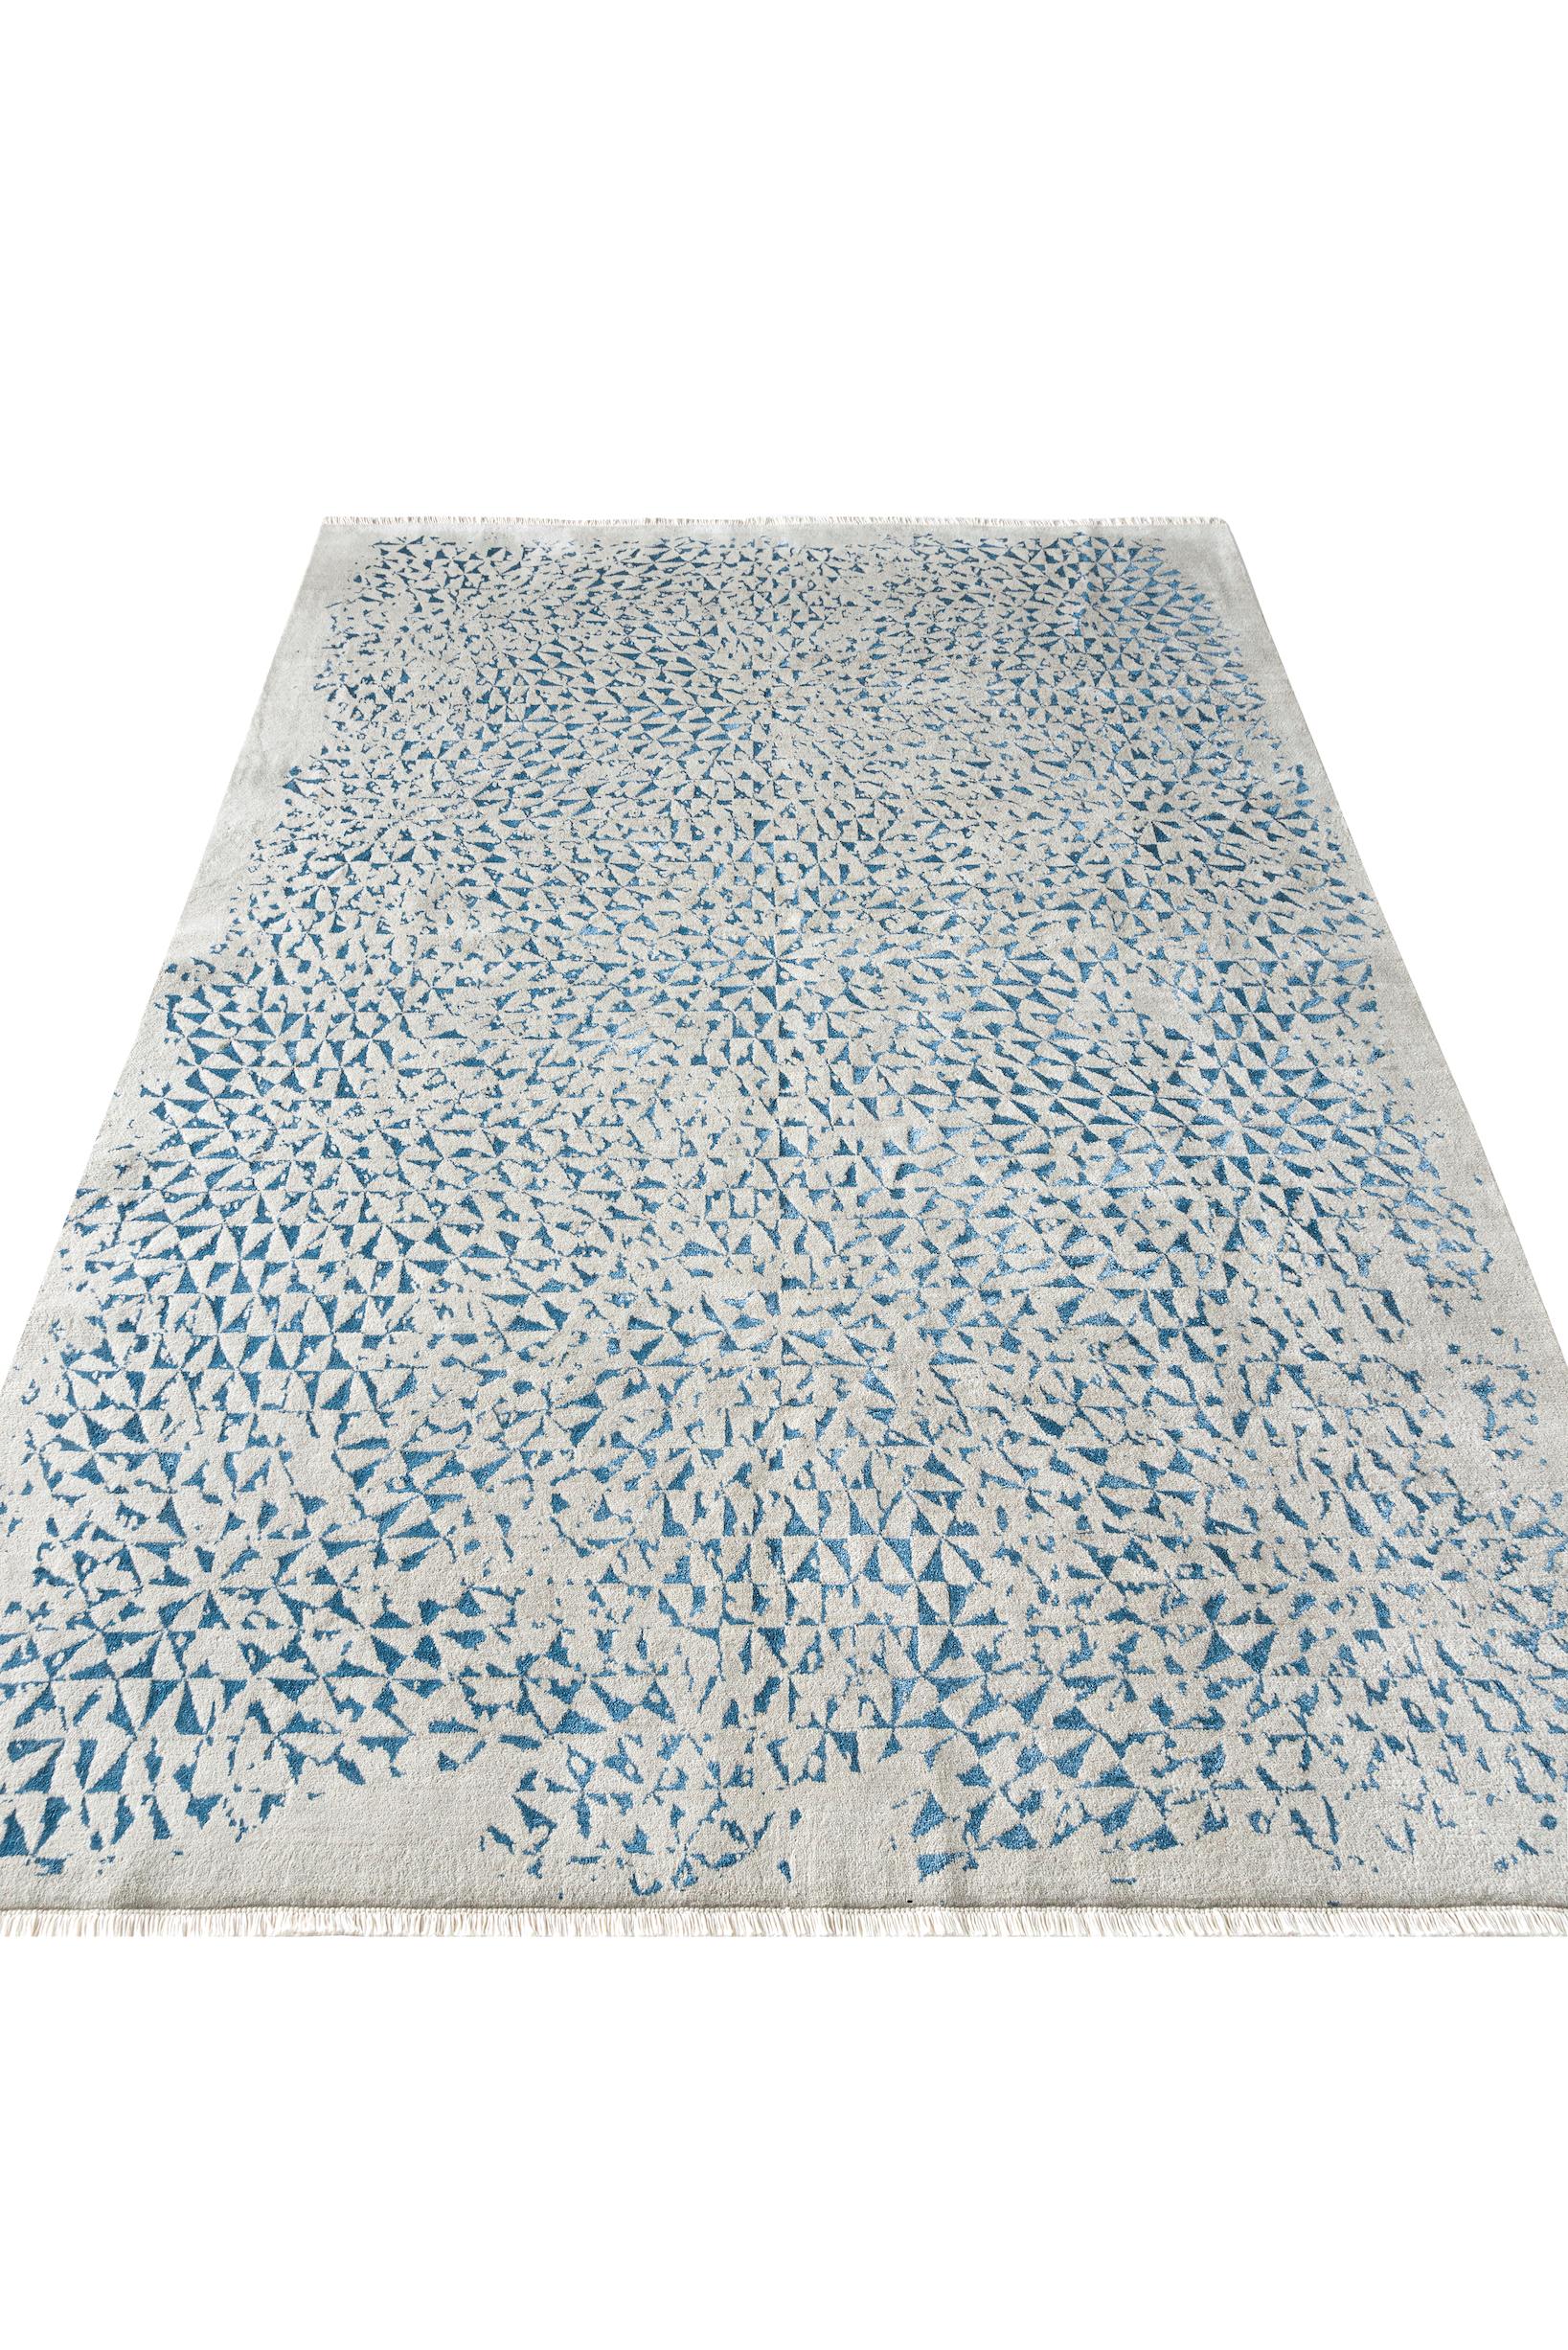 Über den Teppich:
Dies ist ein handgeknüpfter Teppich mit 160.000 Knoten pro Quadratmeter in einer Doppelknotenkonstruktion. Das Obermaterial besteht aus ägyptischer Wolle mit Bambusseideneinlagen, Kette und Schuss sind aus 100 % ägyptischer